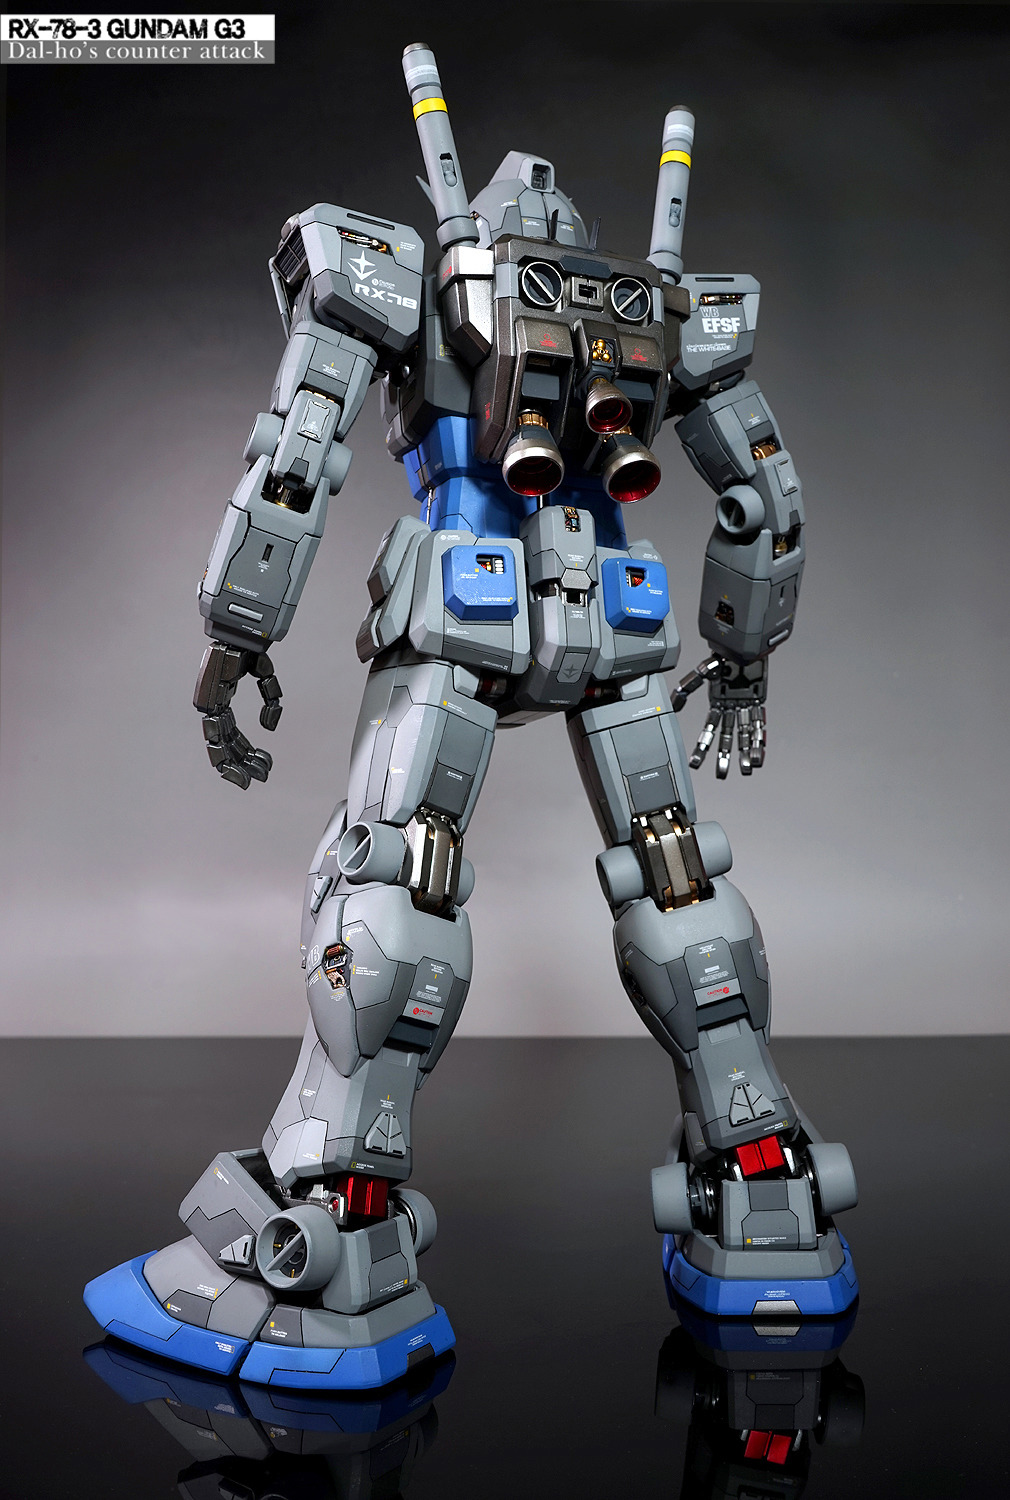 GUNDAM GUY: PG 1/60 RX-78-3 Gundam G-3 - Customized Build